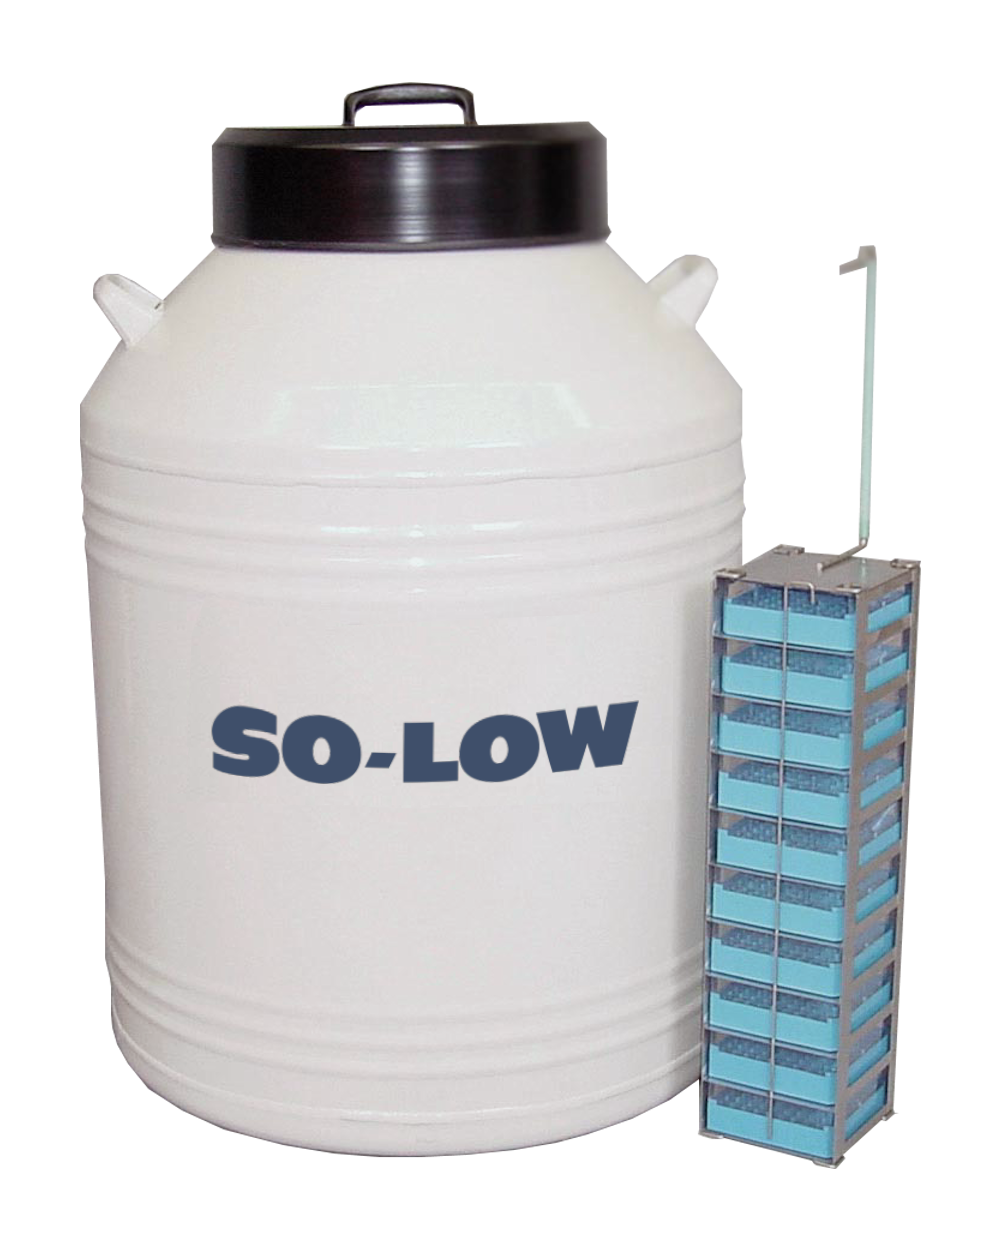 So-Low 176 liter LN2 Tank w/ Polycarbonate Boxes